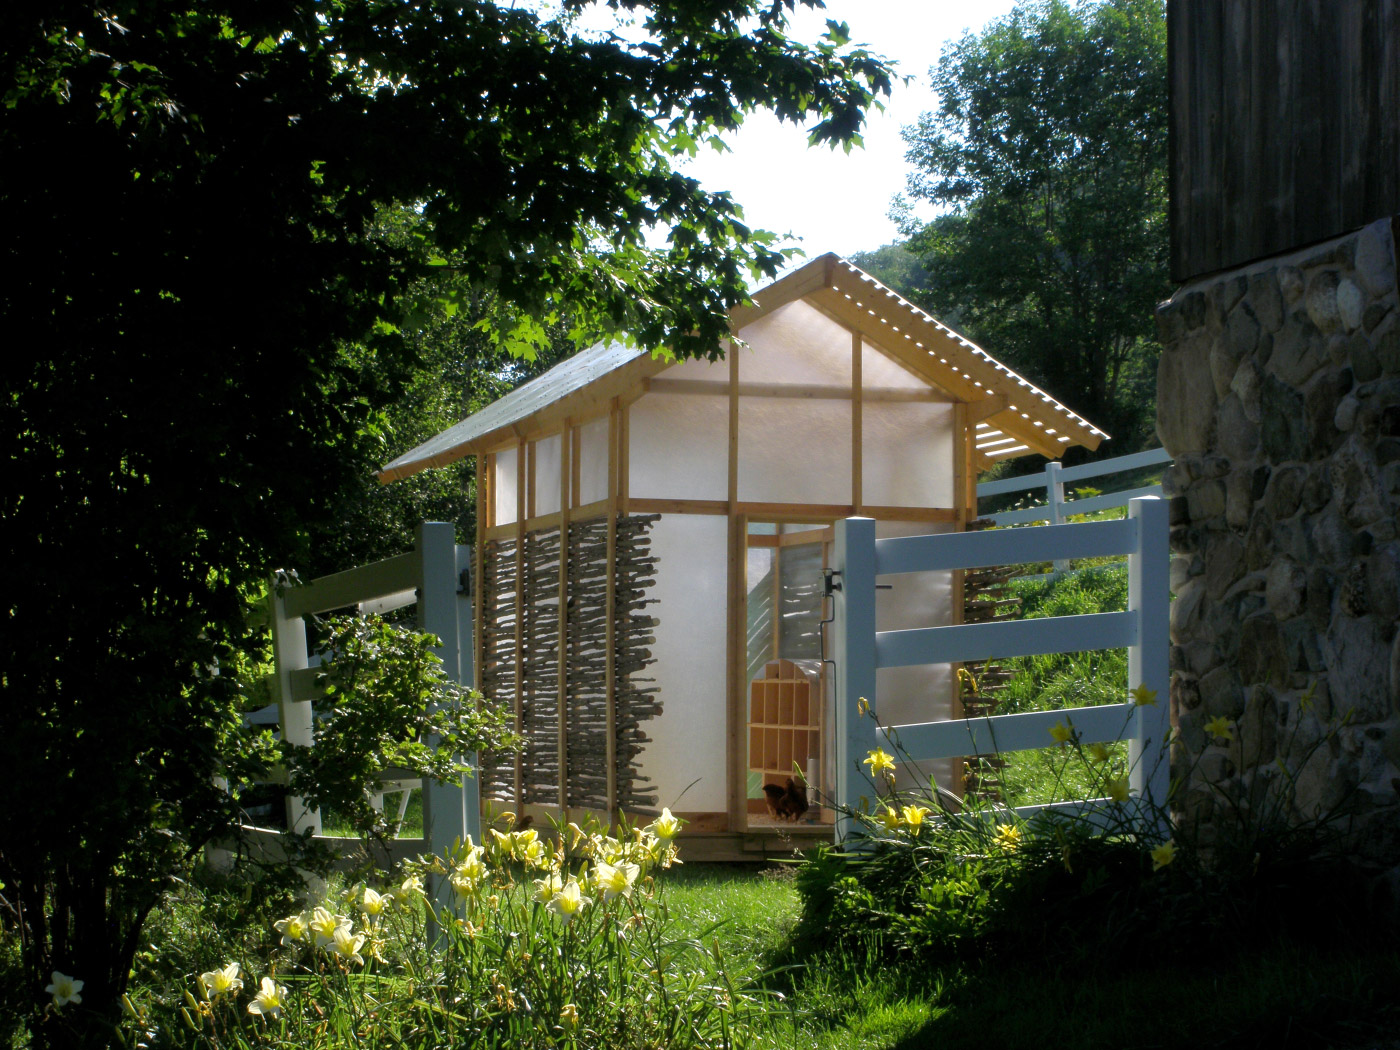 2011年，该工作室设计了一个玻璃纤维包裹的鸡舍——Chicken Chapel。